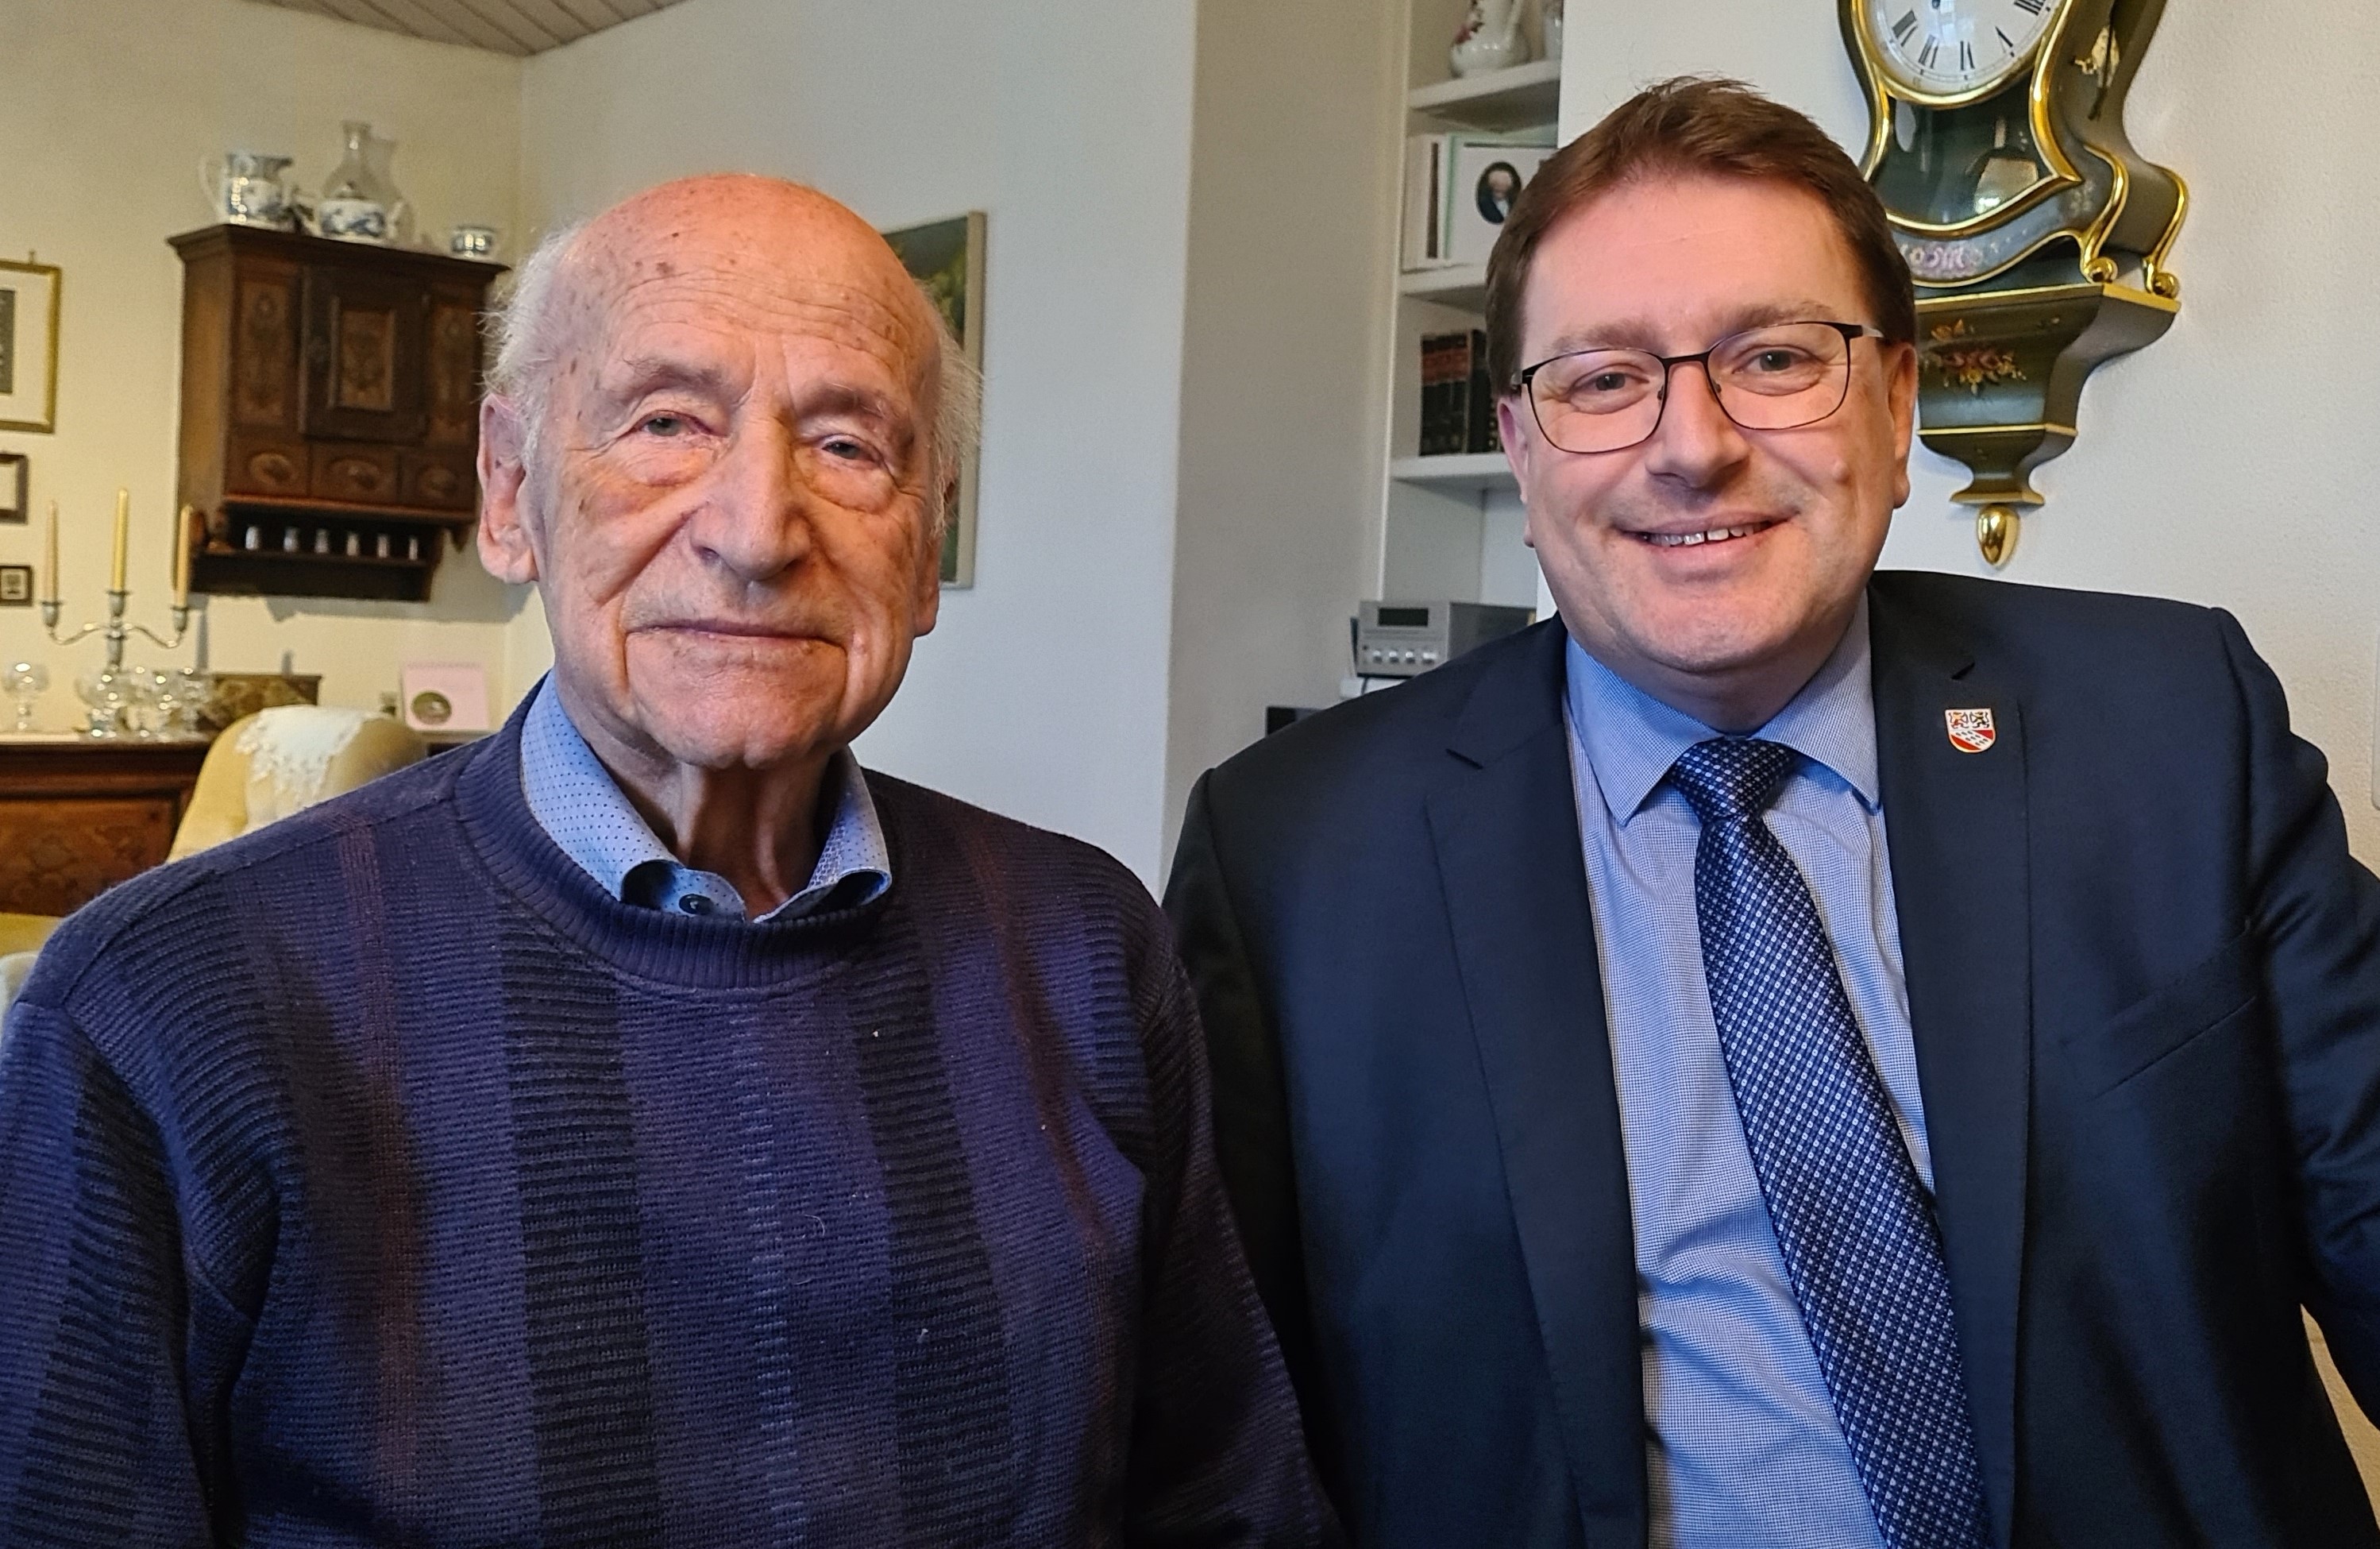 Herr Walter Reusser durfte seinen 90. Geburtstag am 28. Dezember 2022 feiern. Der Gemeinderat überbrachte persönlich die Glückwünsche, herzliche Gratulation!